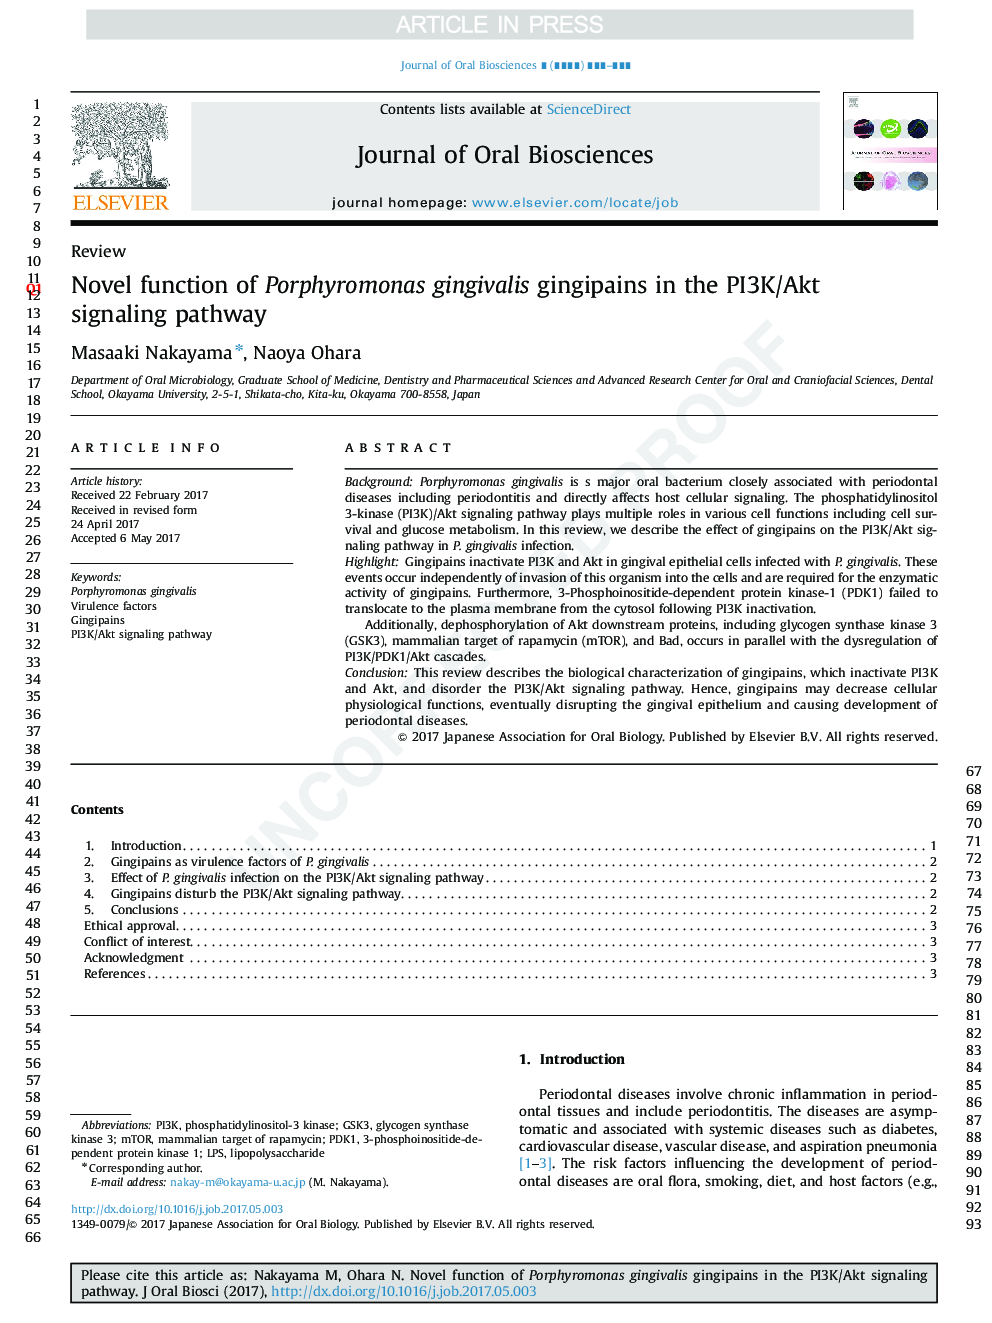 Novel function of Porphyromonas gingivalis gingipains in the PI3K/Akt signaling pathway